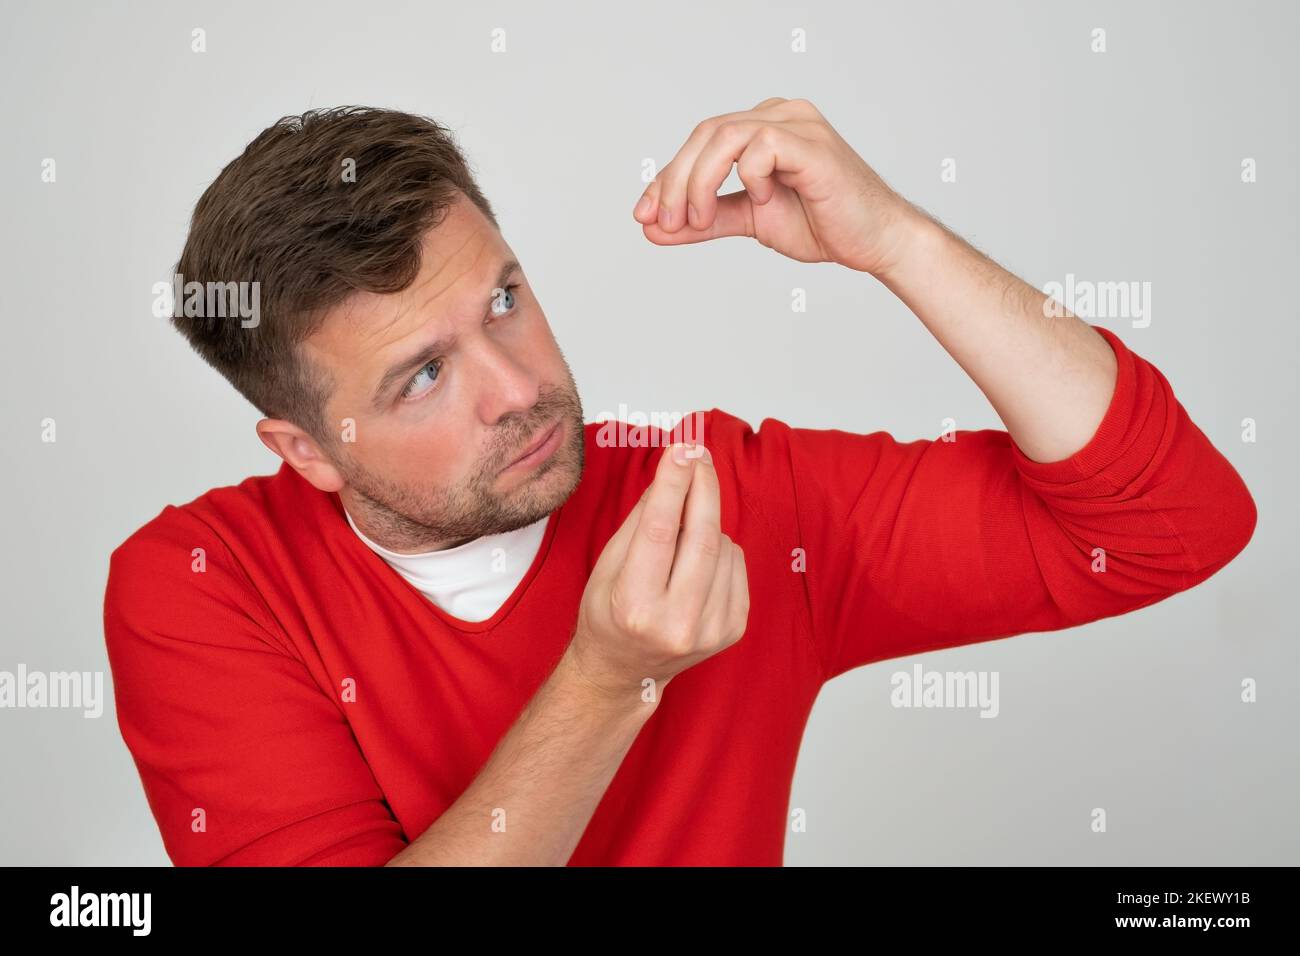 L'homme mature montre de petites mesures de petite taille avec les doigts Banque D'Images